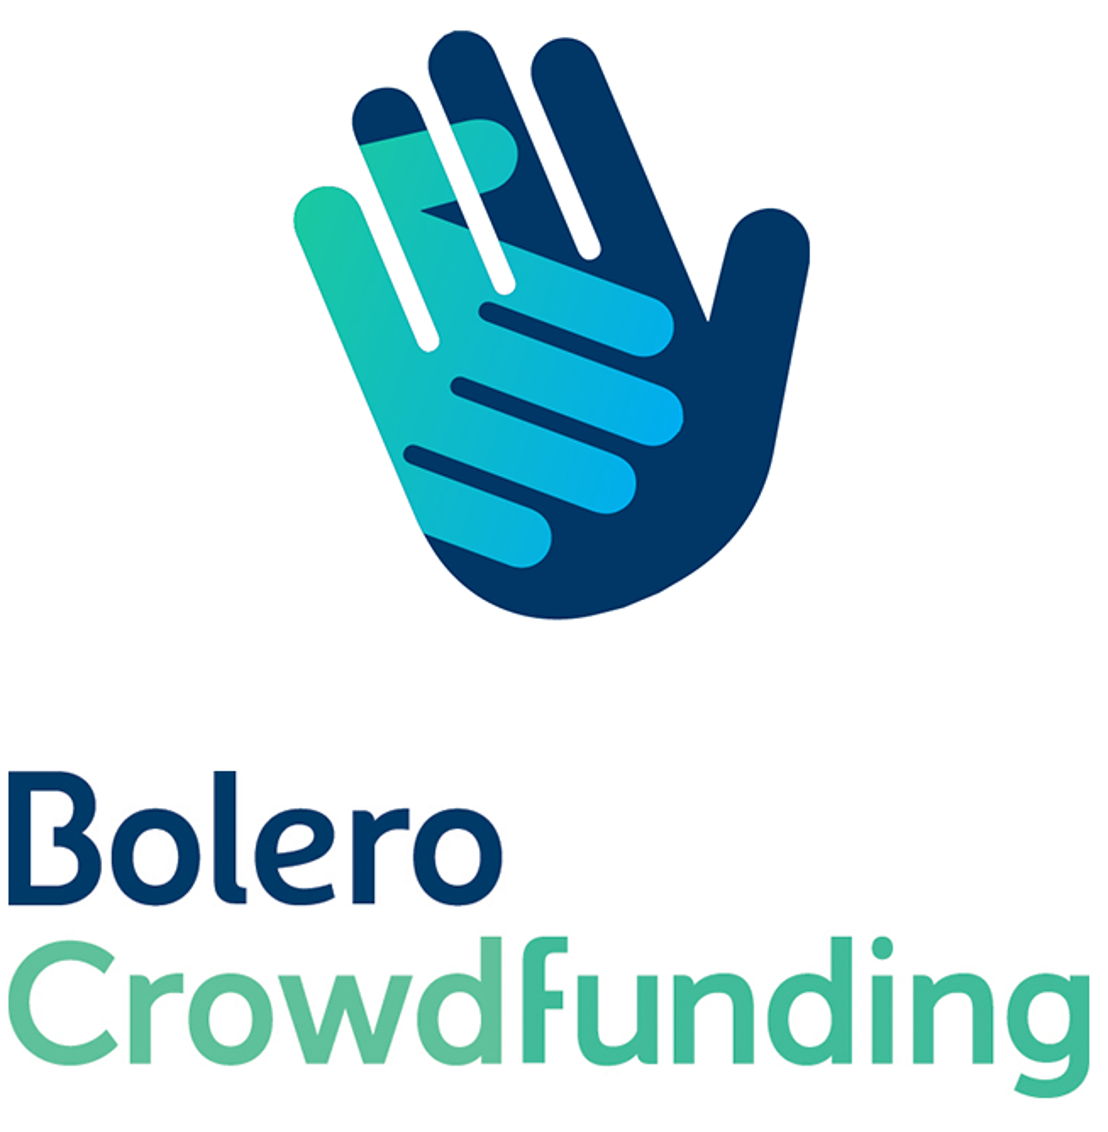 Europese licentie voor nieuw 
Bolero Crowdfunding-platform